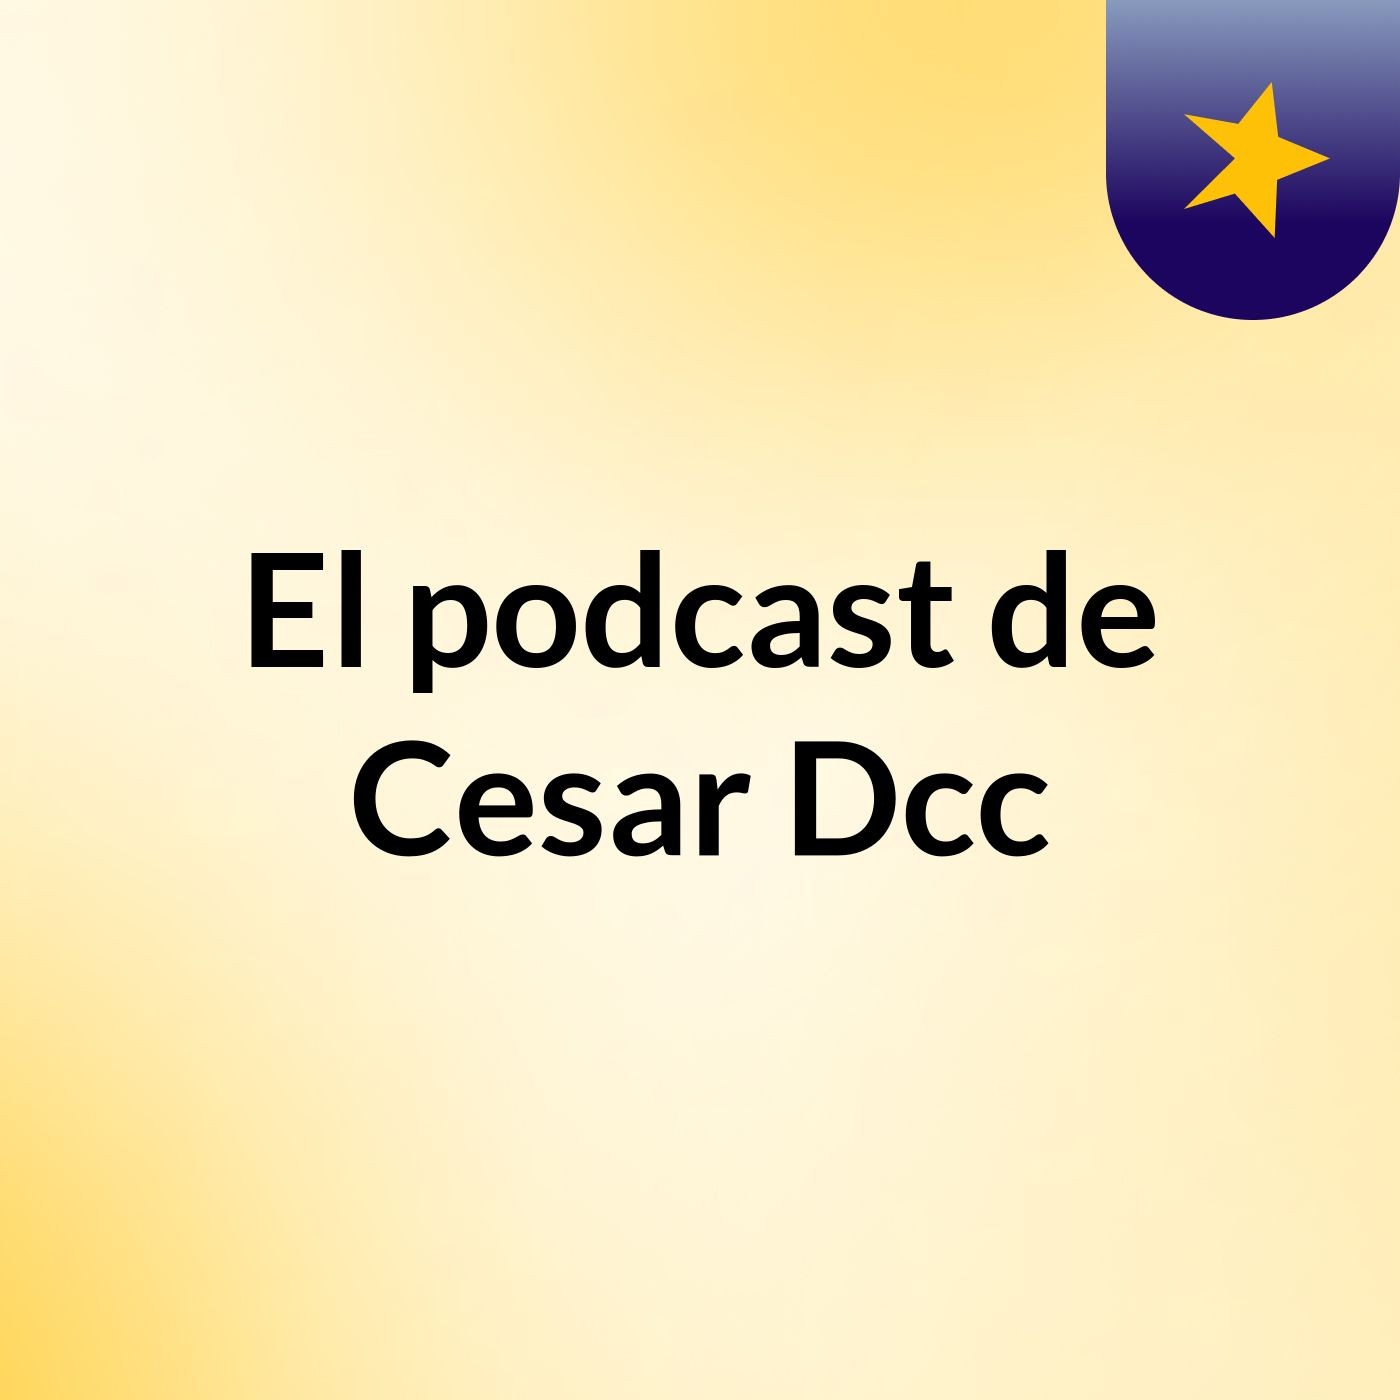 El podcast de Cesar Dcc